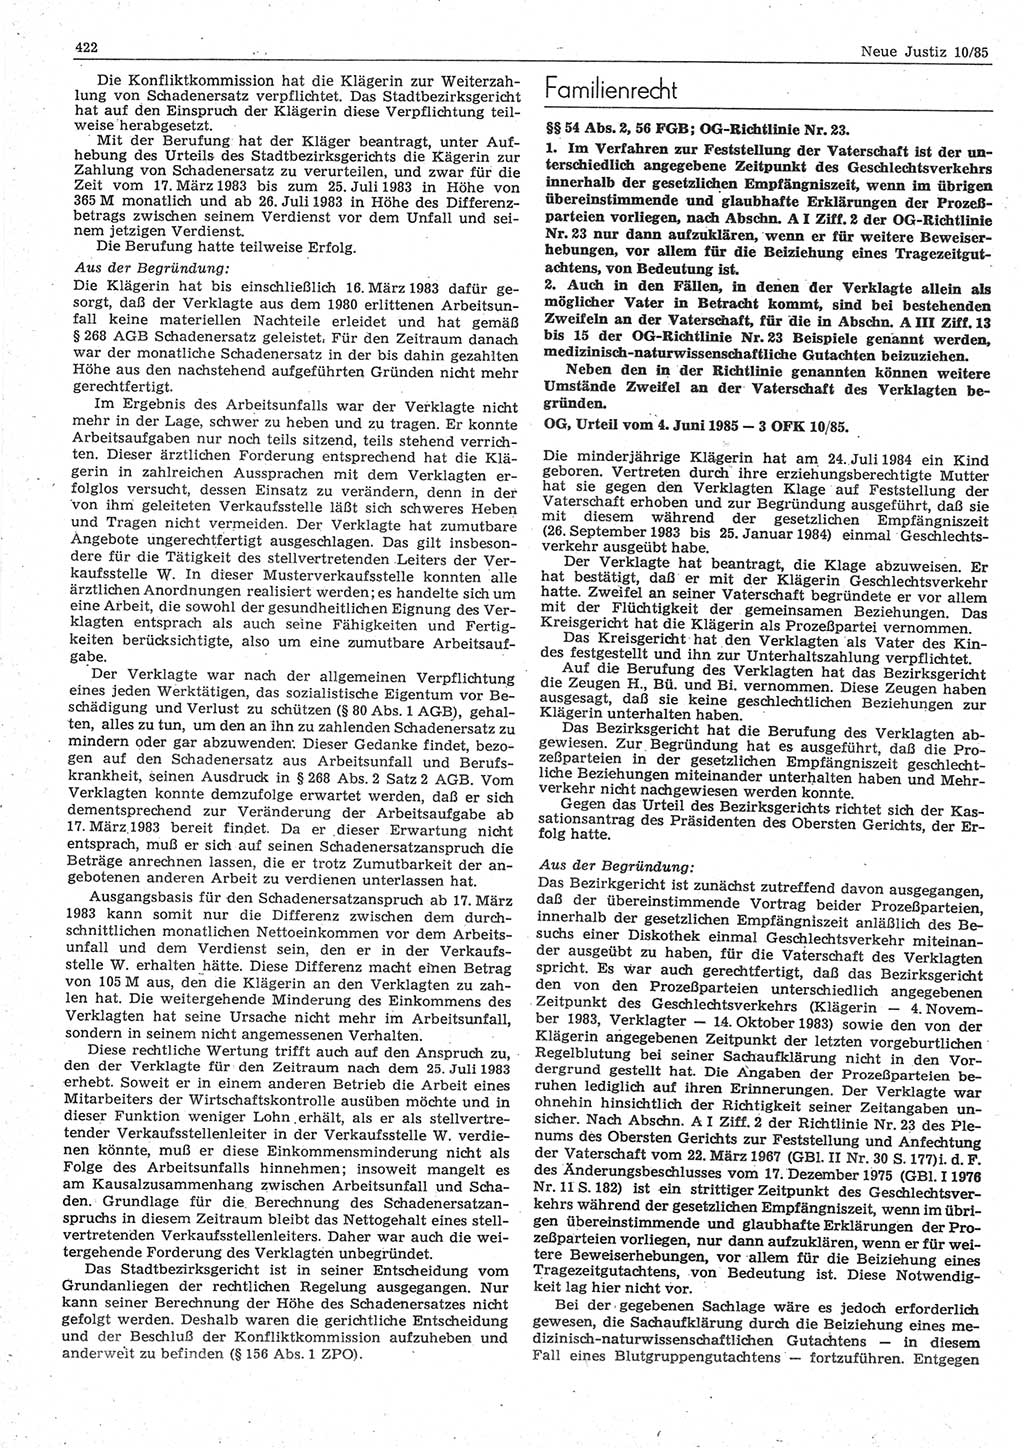 Neue Justiz (NJ), Zeitschrift für sozialistisches Recht und Gesetzlichkeit [Deutsche Demokratische Republik (DDR)], 39. Jahrgang 1985, Seite 422 (NJ DDR 1985, S. 422)